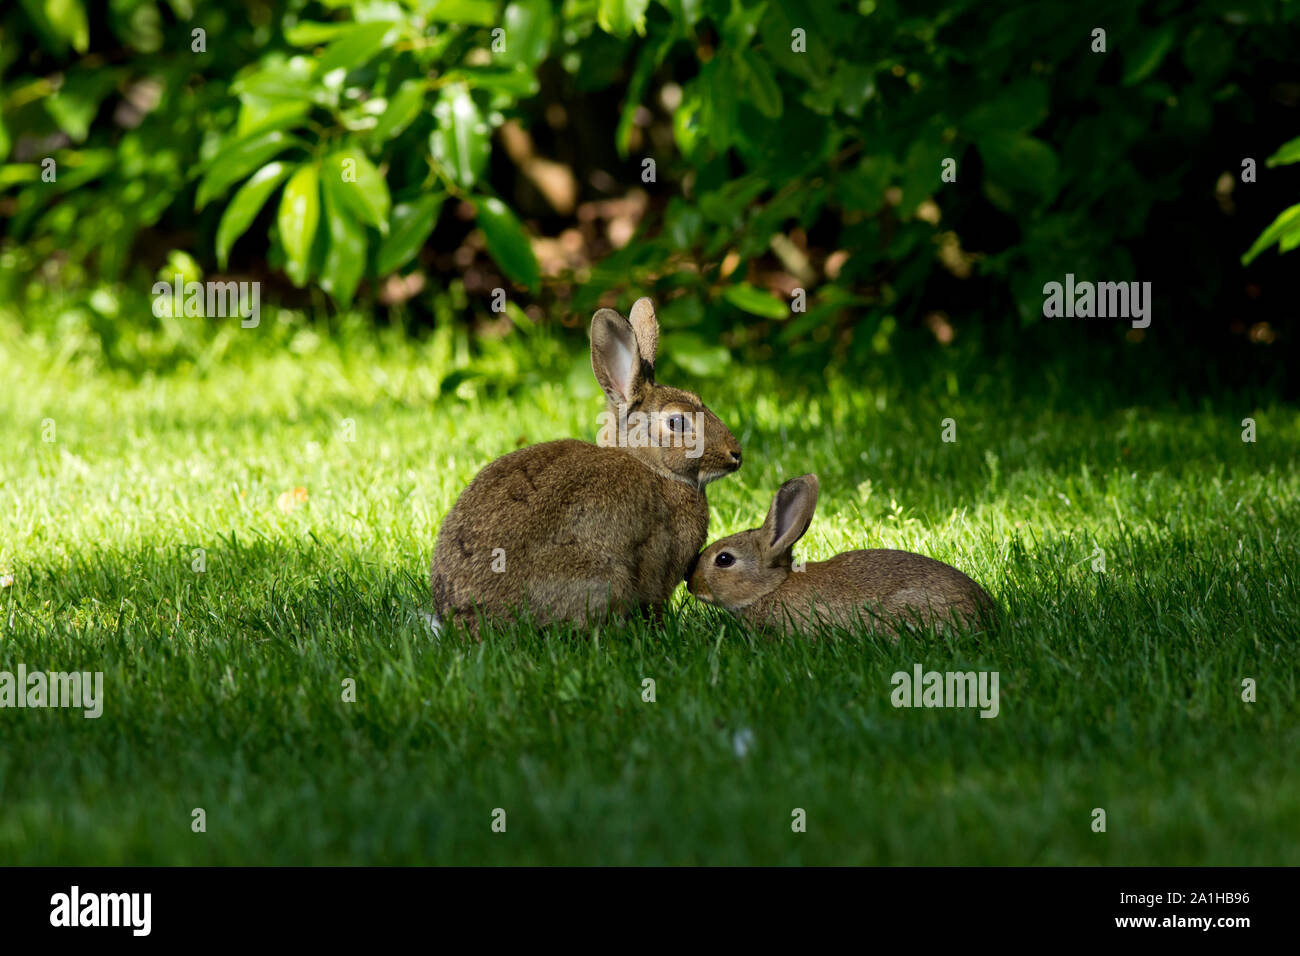 La madre y el bebé lindo bunny conejos besar en pasto verde fresco en una agradable mañana de primavera con mucho sol rodeado por verdes hojas frescas. Foto de stock